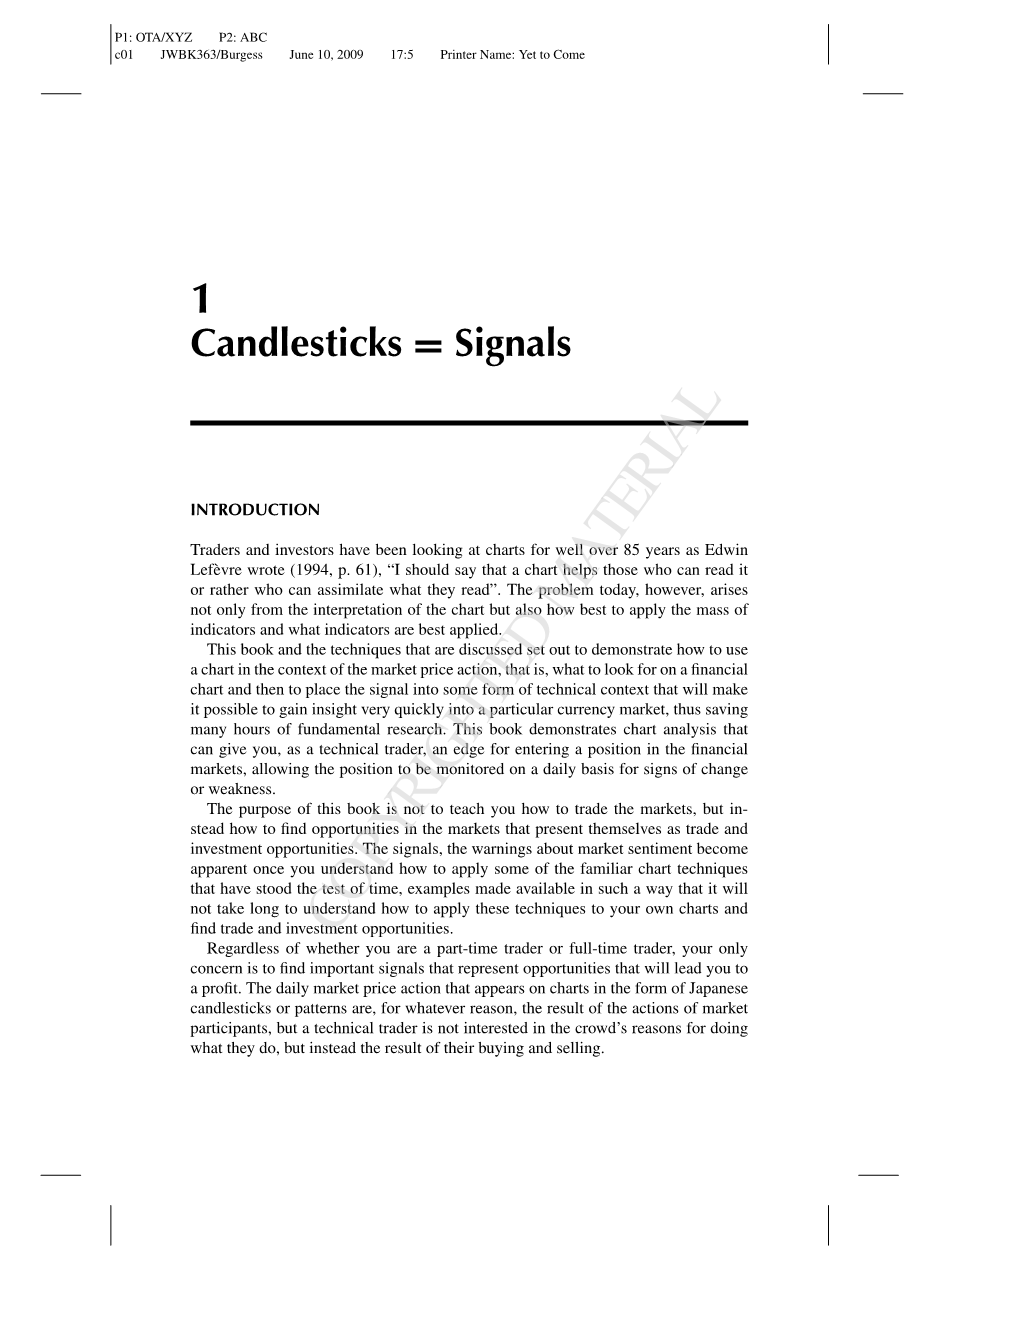 1 Candlesticks = Signals